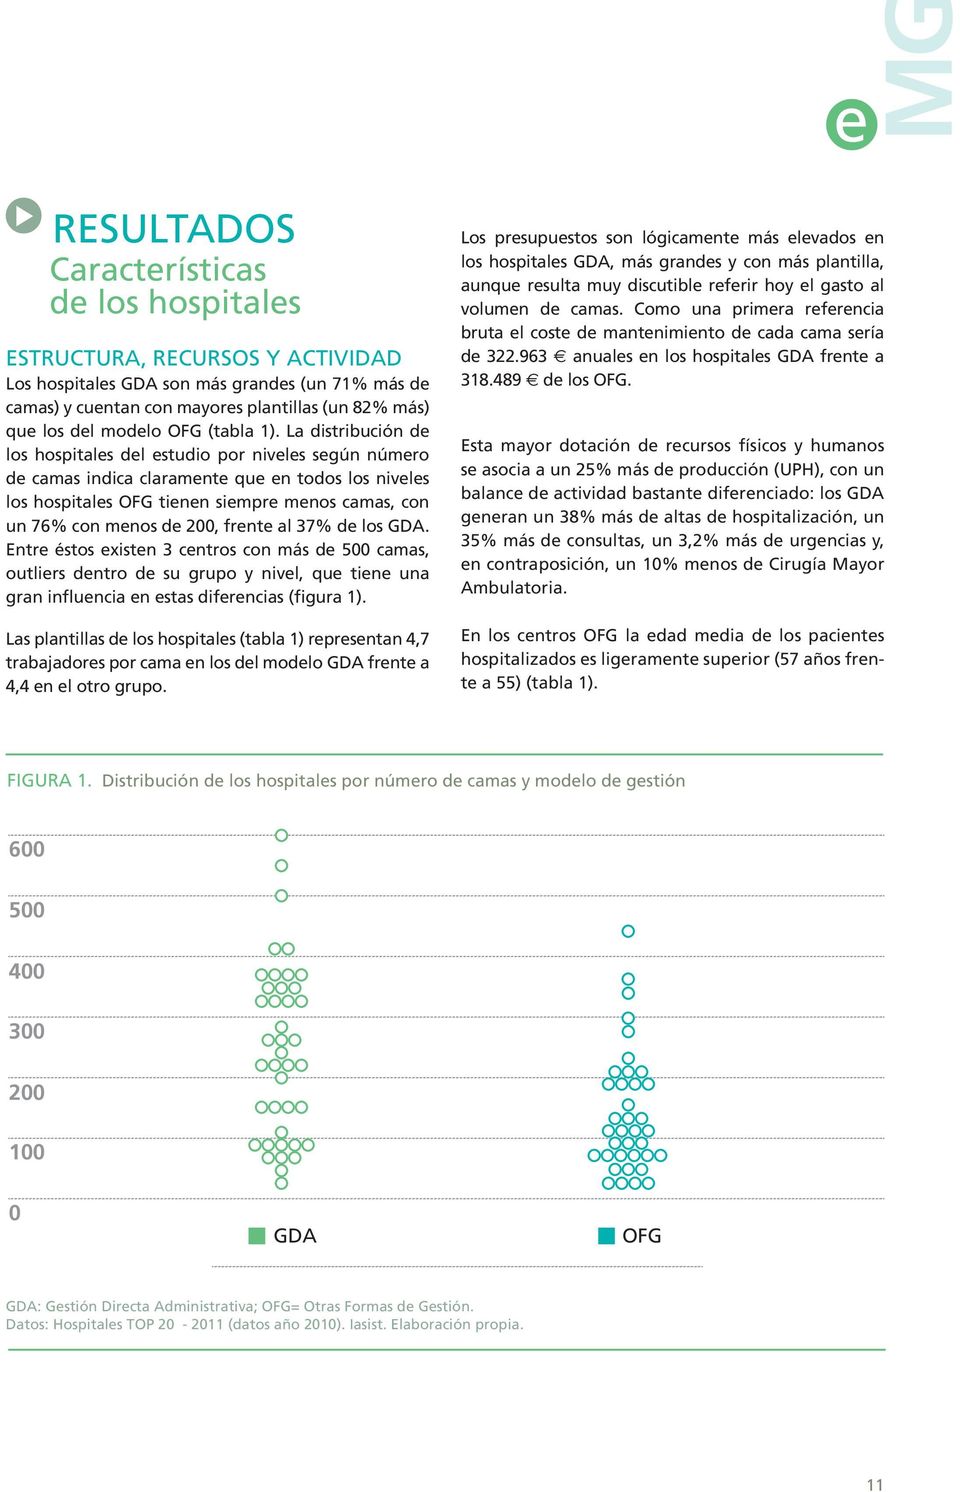 La distribución de los hospitales del estudio por niveles según número de camas indica claramente que en todos los niveles los hospitales OFG tienen siempre menos camas, con un 76% con menos de 200,